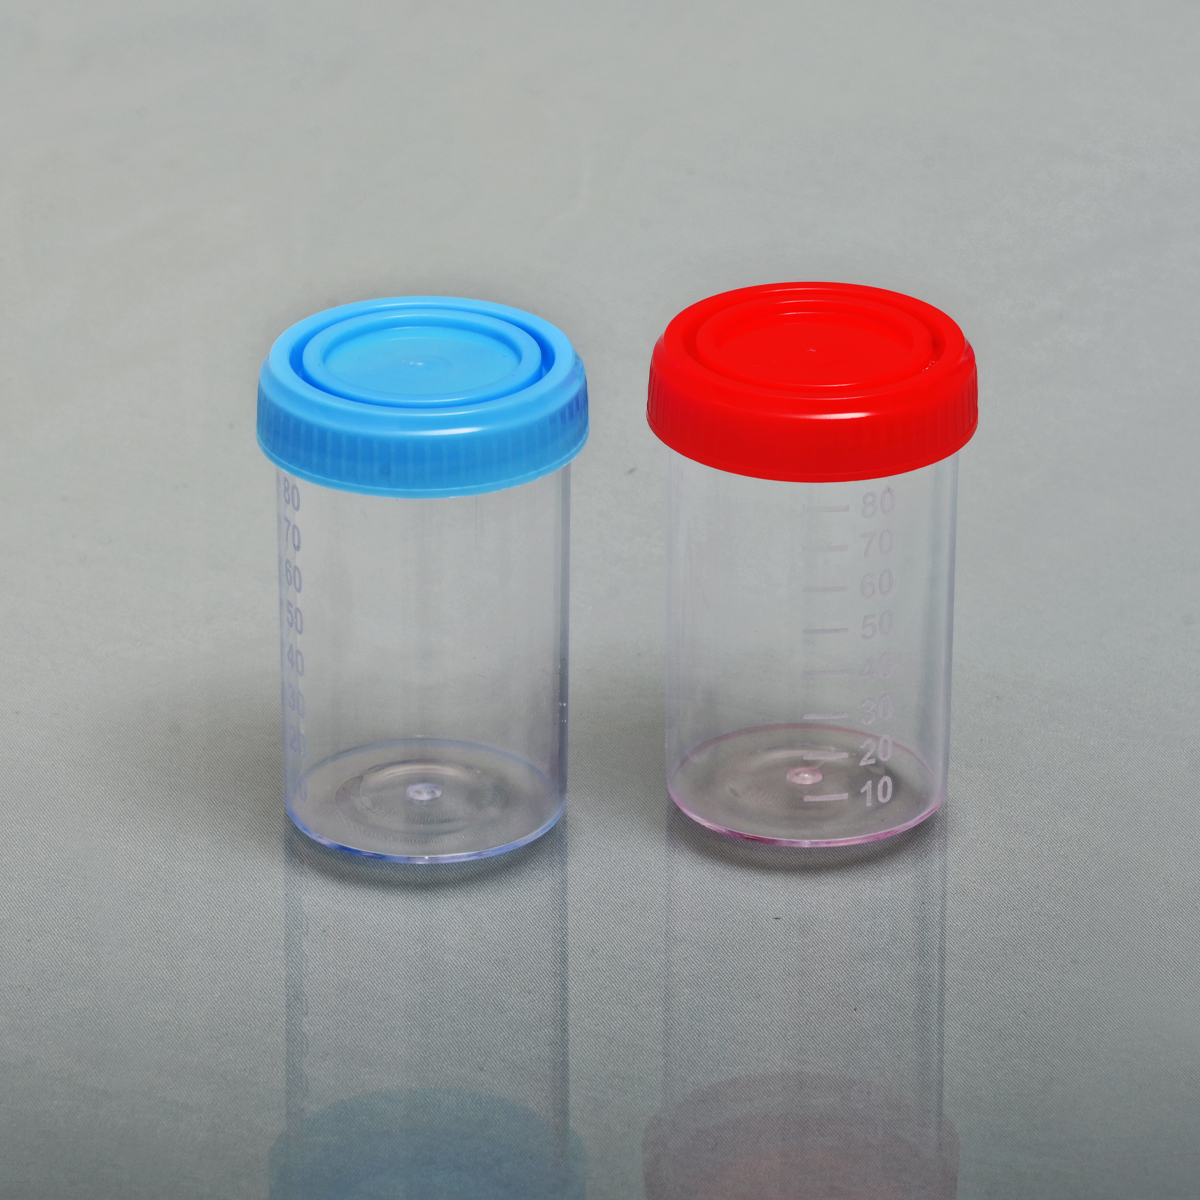 ظرف  نمونه ادرار استریل  شفاف 90 میلی لیتر  - Urine Container - نوآوران تولید پویا    NTP - مصرفی - نمونه گیری - نوآوران طب بین الملل